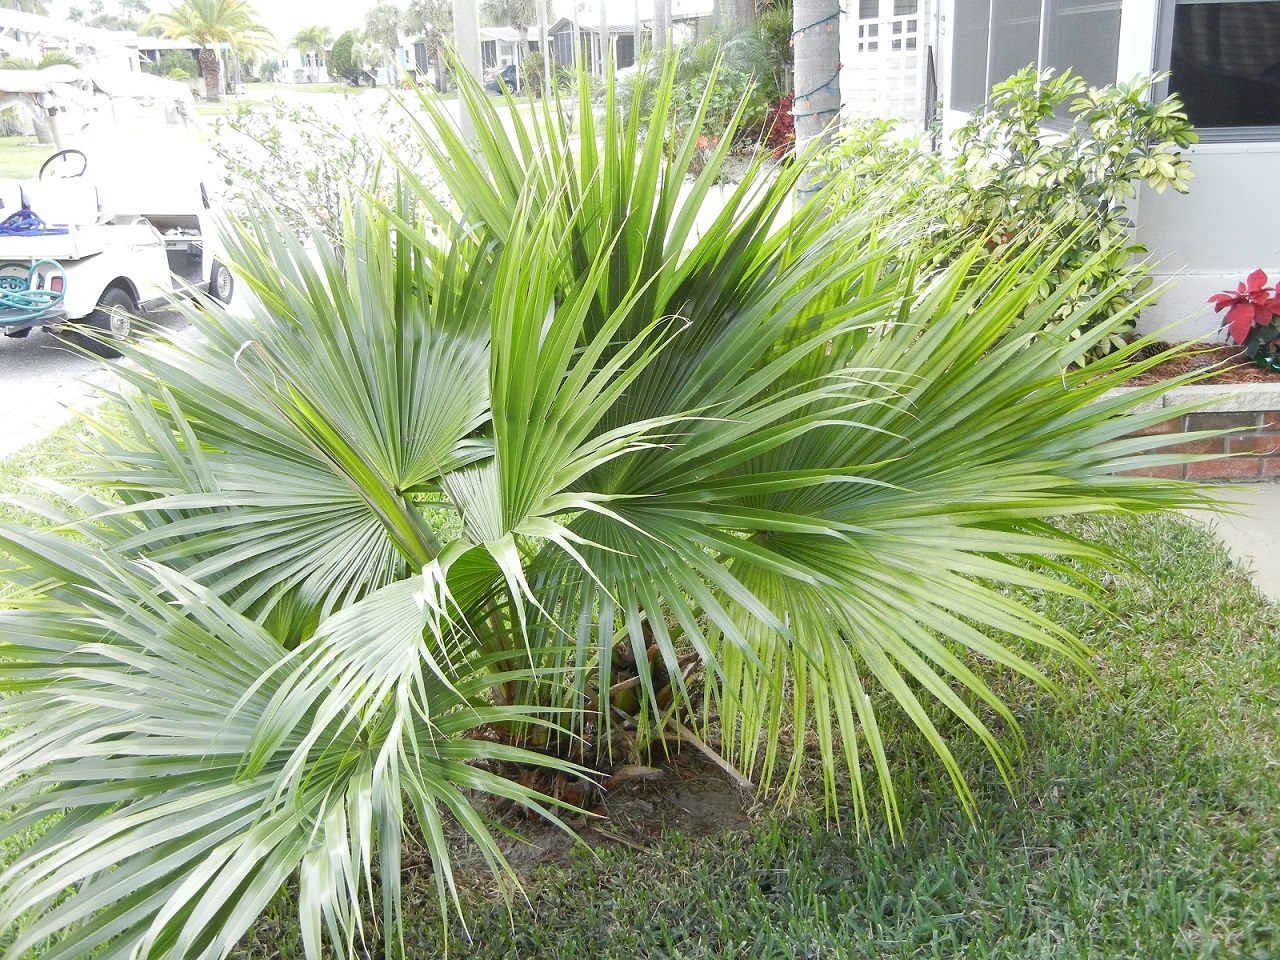 Chinese Fan palm